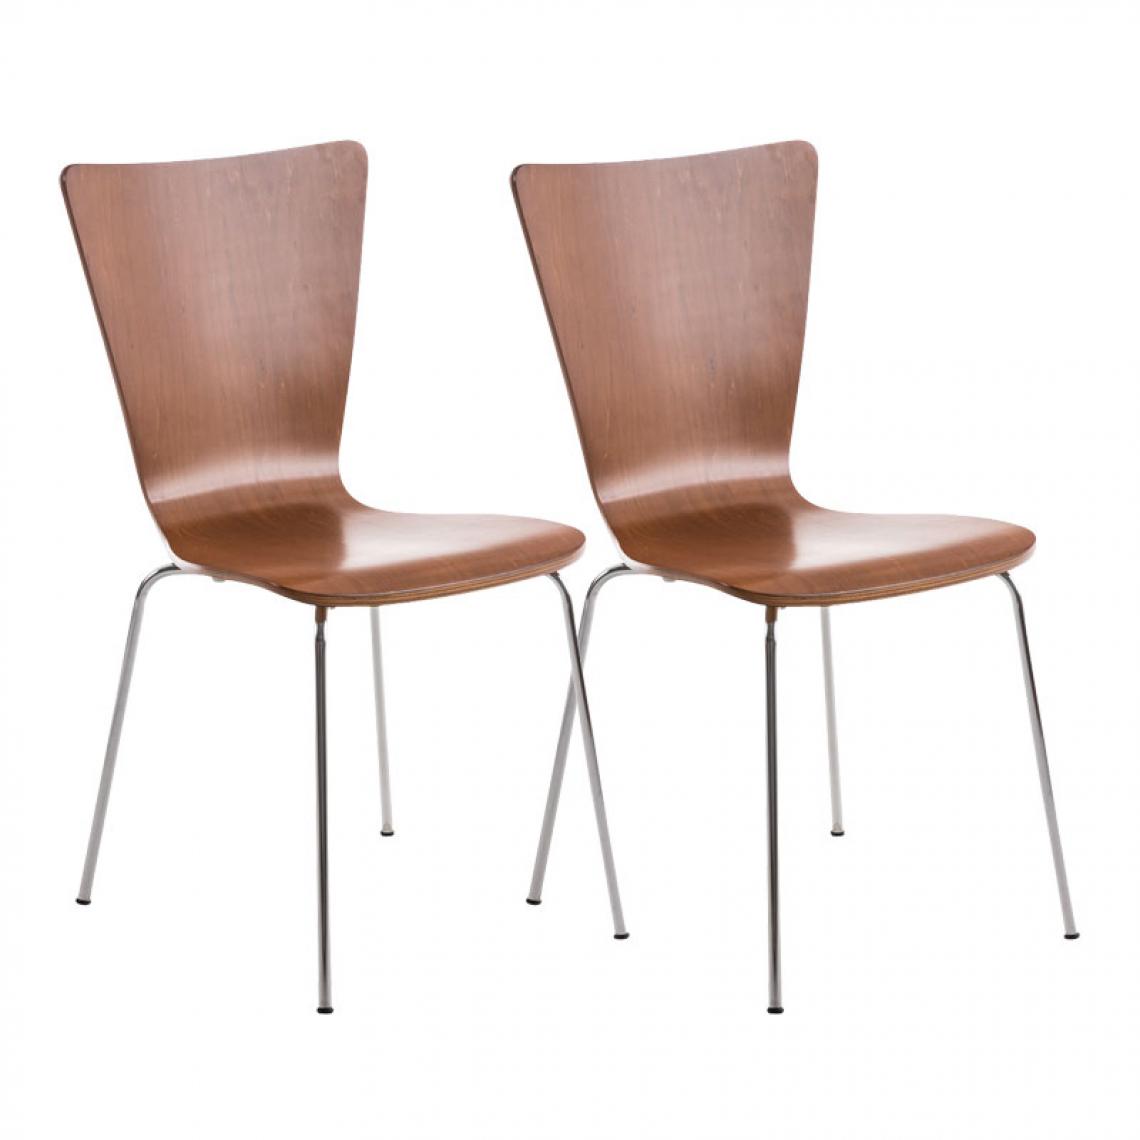 Icaverne - Esthetique Lot de 2 chaises visiteurs reference Jakarta couleur marron - Chaises